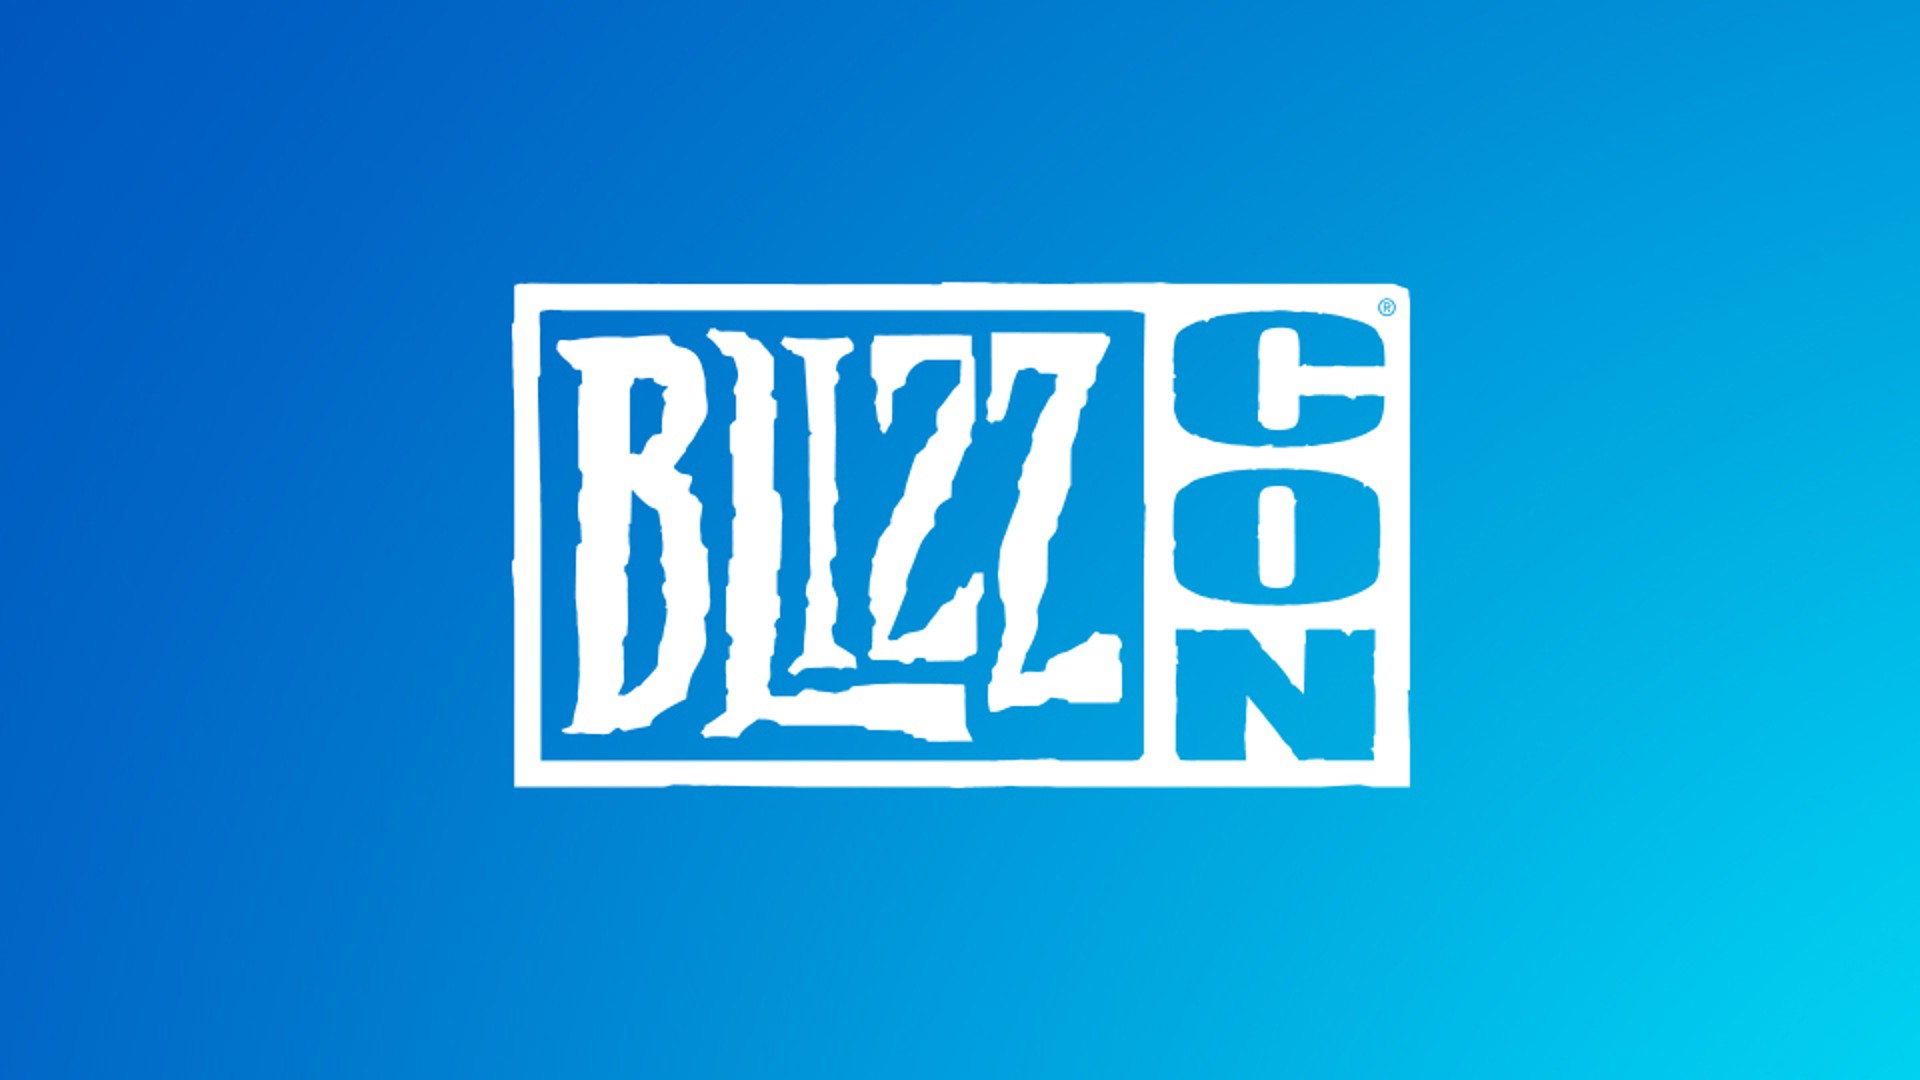 Blizzard ประกาศยกเลิกจัดงาน BlizzCon 2022 และจะกลับมาจัดอีกครั้งในอนาคต